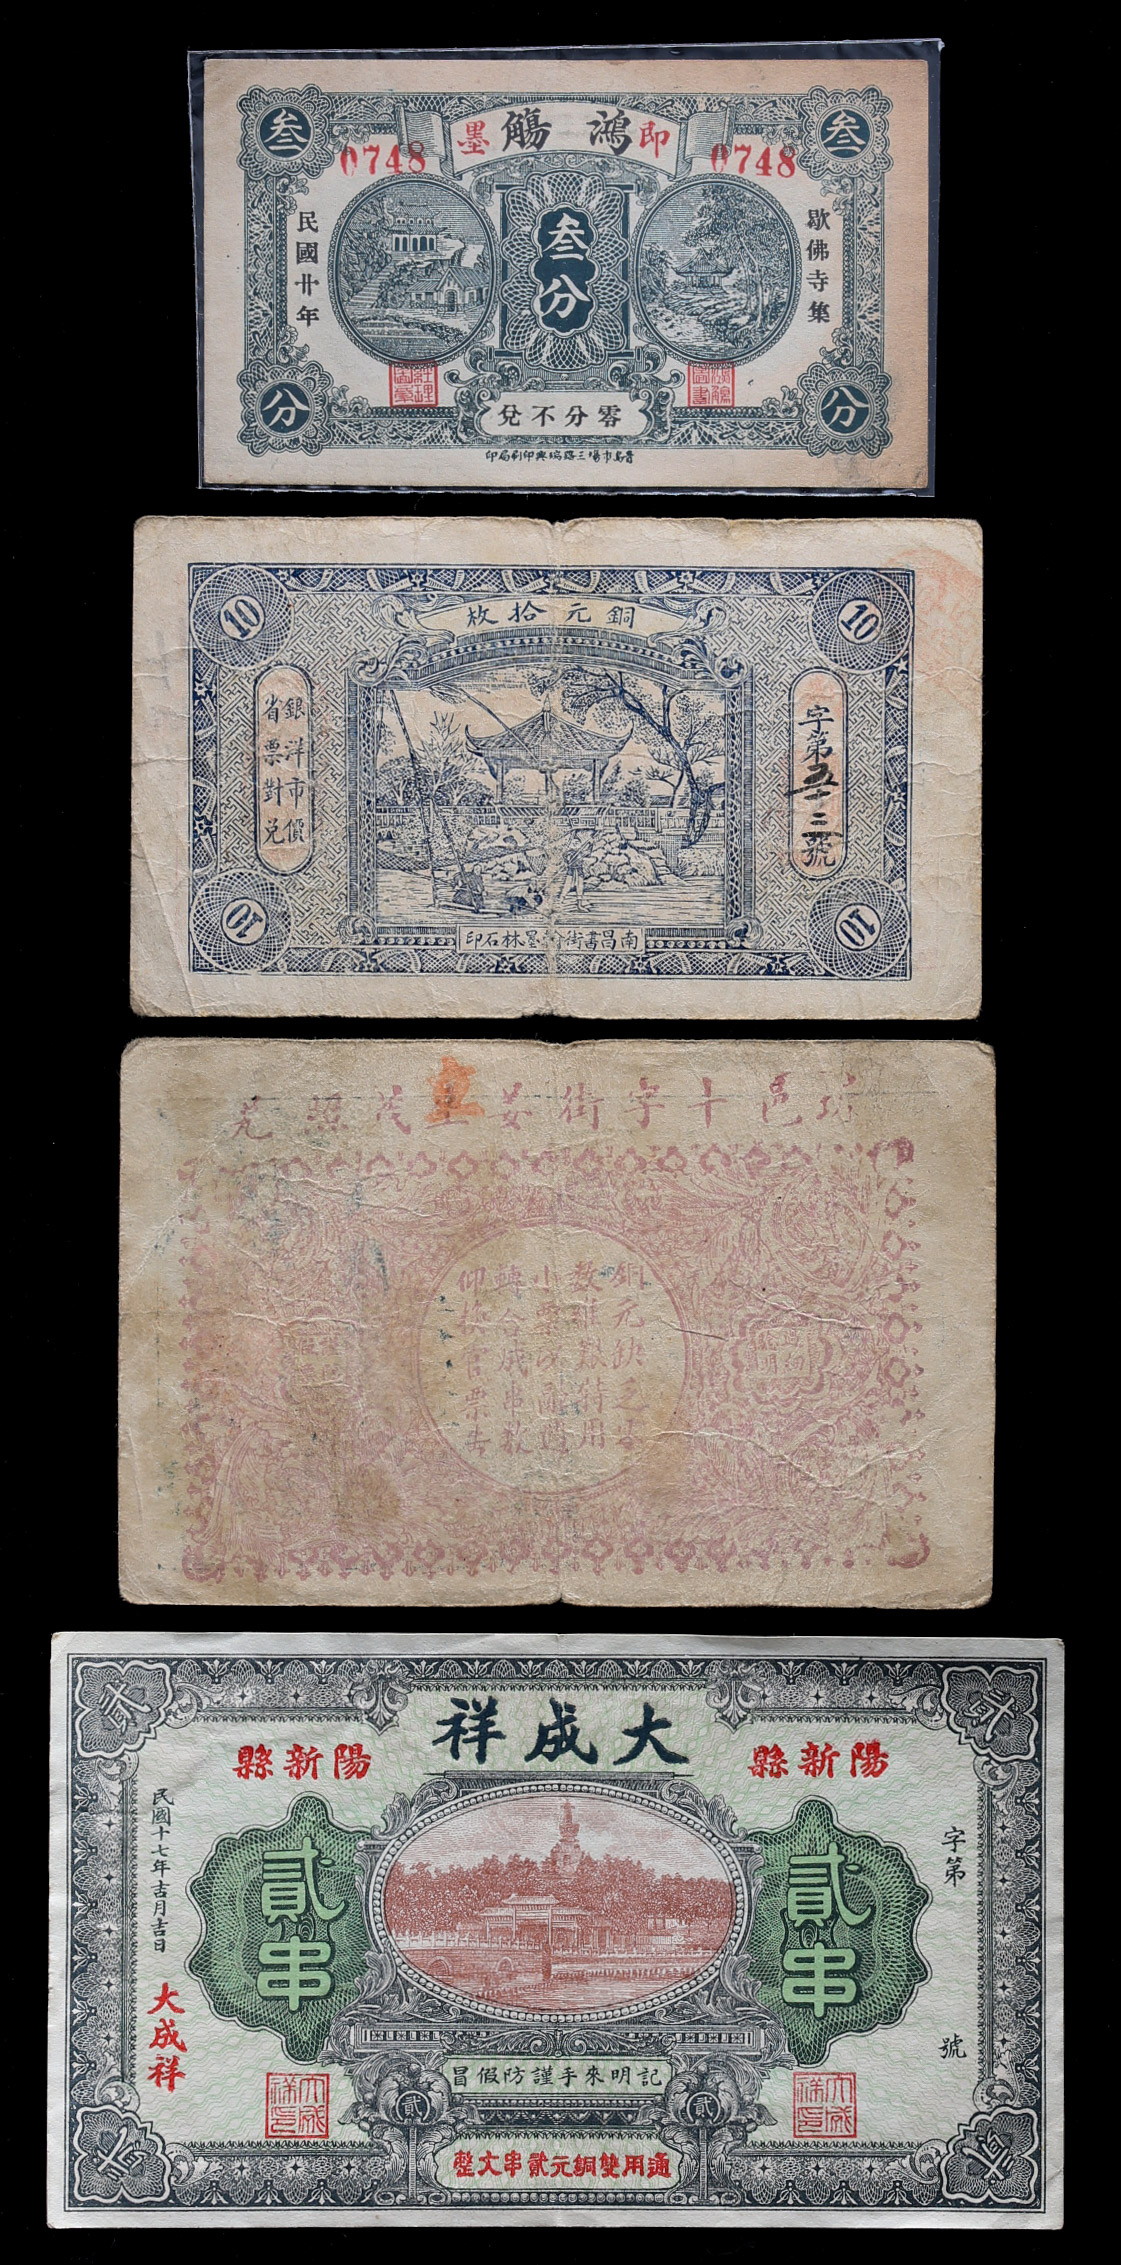 限时竞拍,Lot of China Banknotes中国の紙幣鴻觴余徳懋，義生和大成祥4枚組